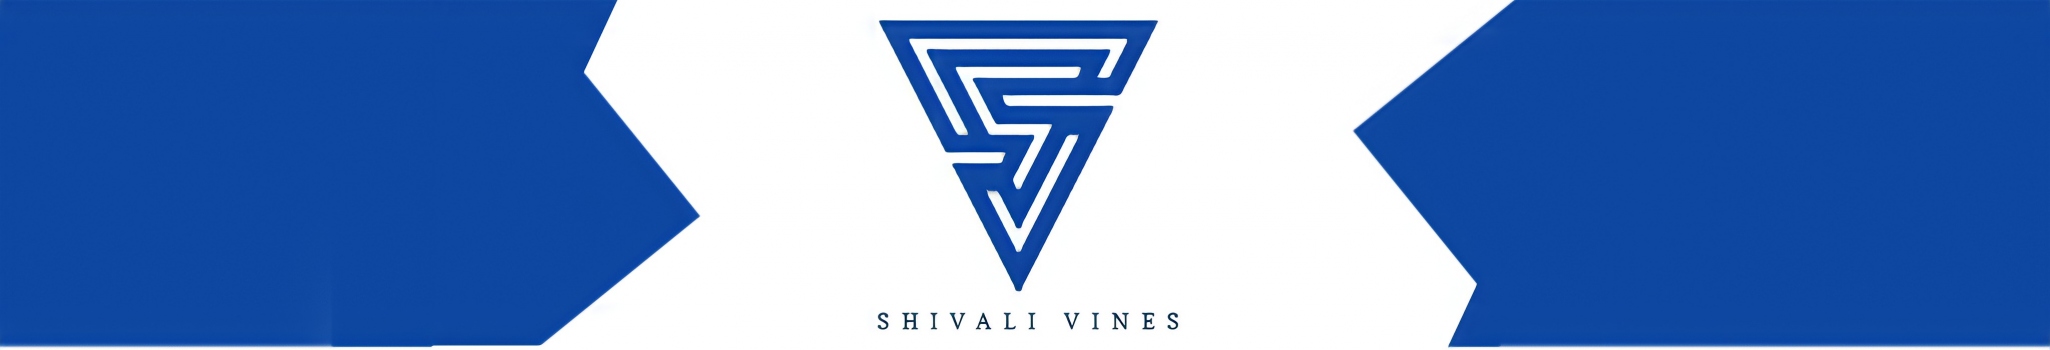 SHIVALI_VINES